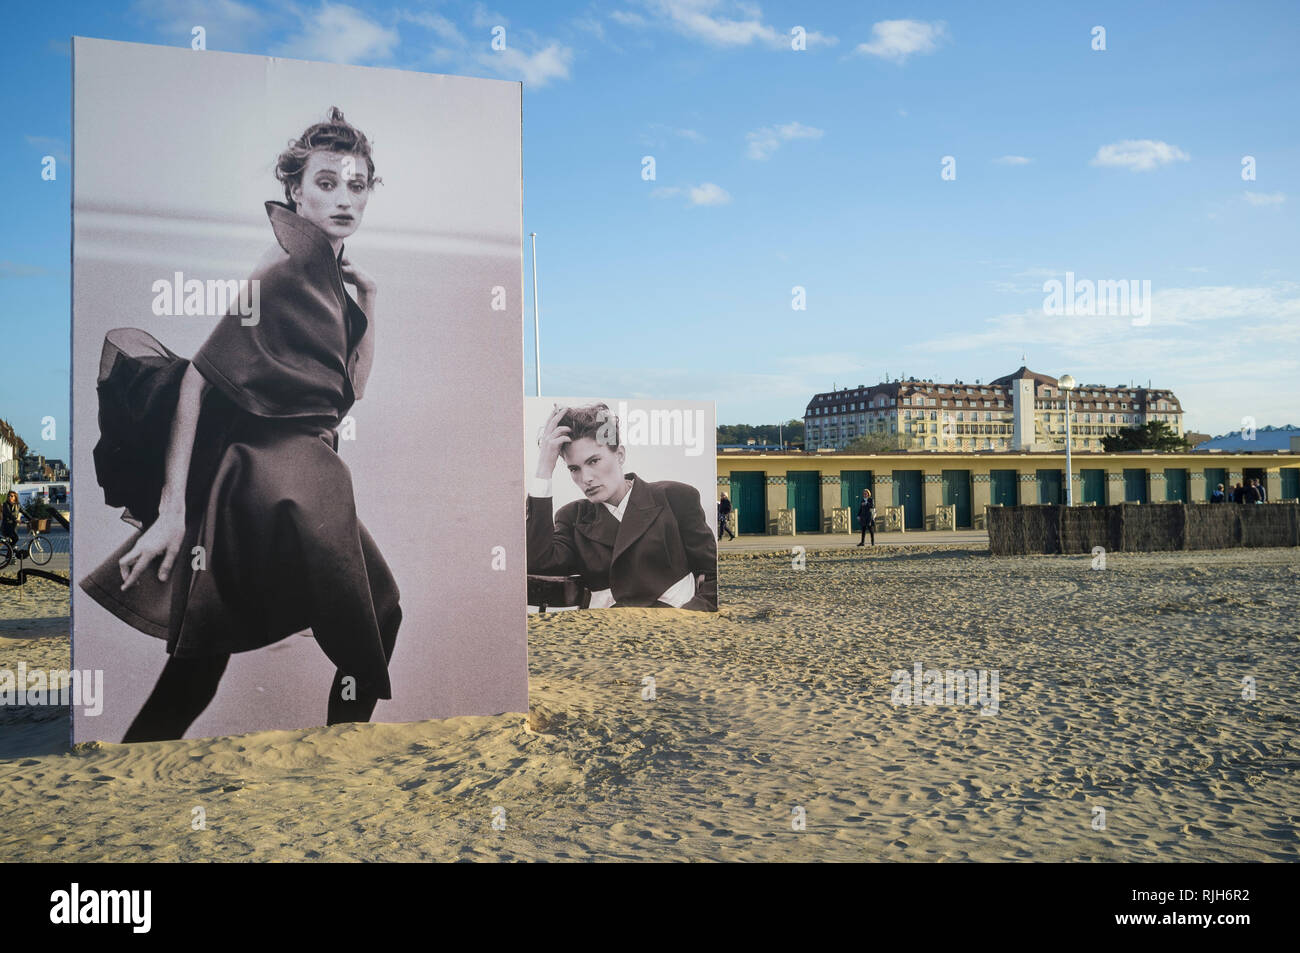 L'installation de photos réalisées par le célèbre photographe allemand Peter Lindbergh sur la plage de Deauville 2017 Festival de la photographie. Banque D'Images